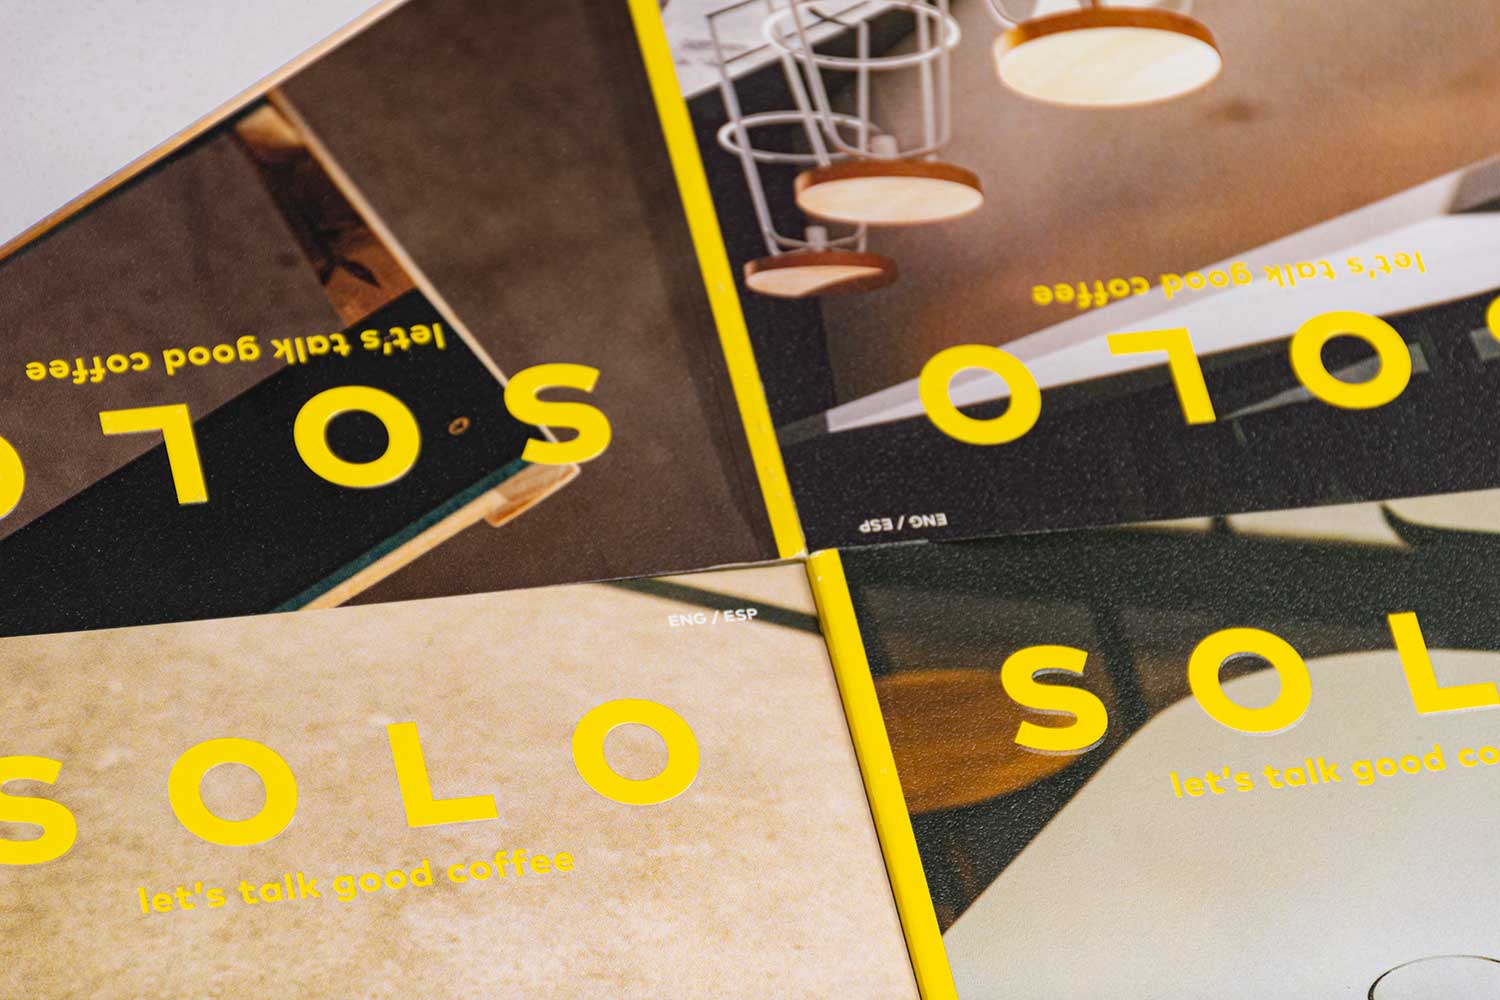 Revista "SOLO" varias portadas